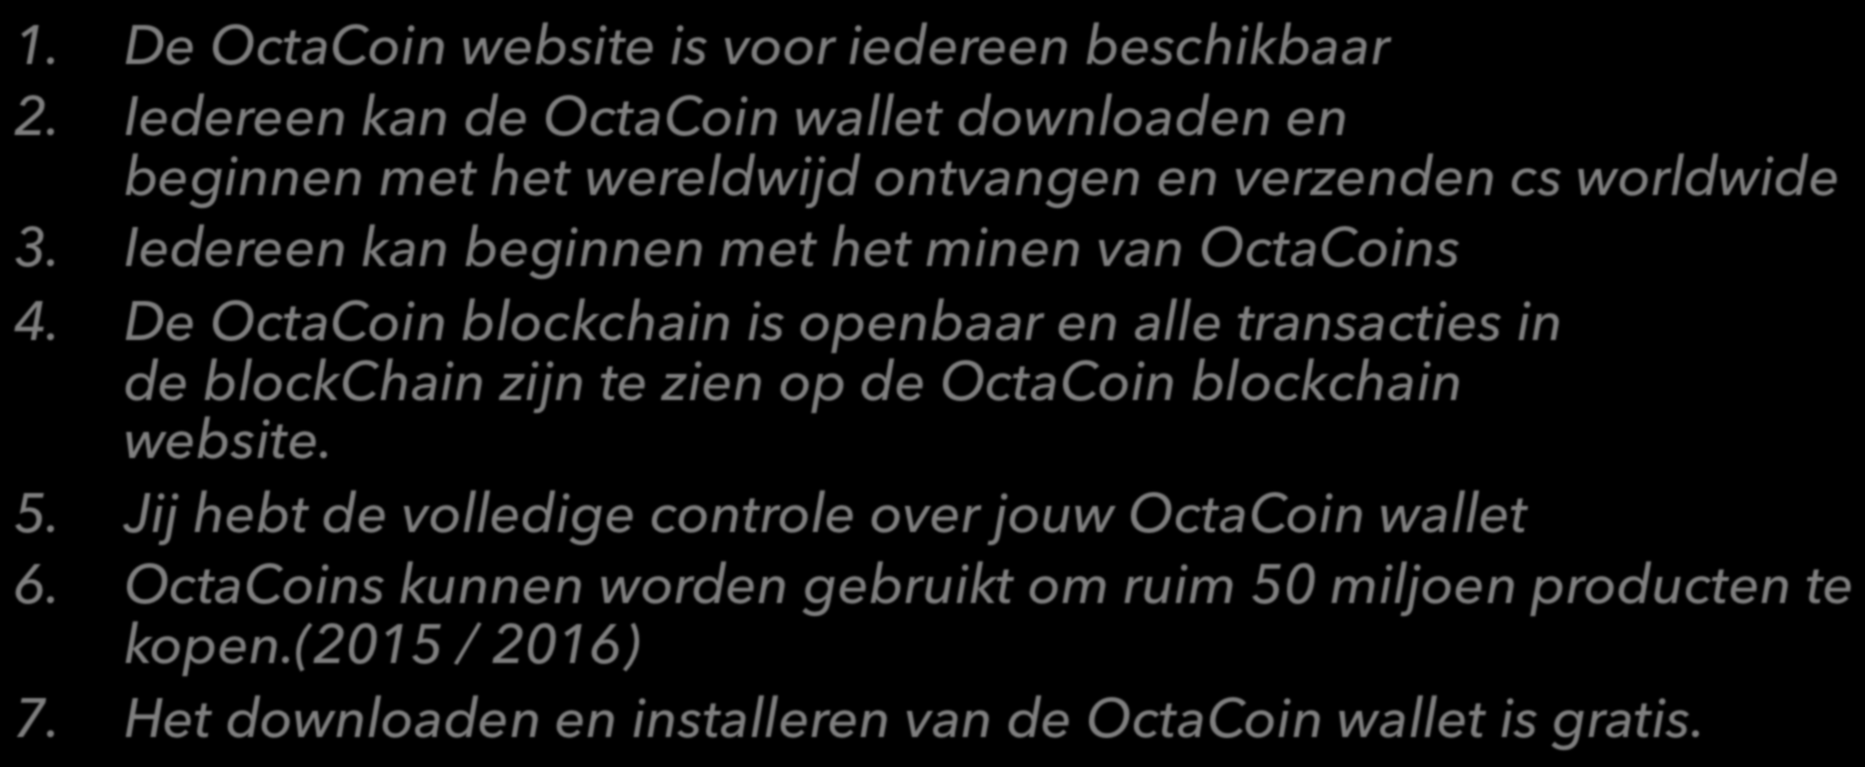 OctaCoin feiten 1. De OctaCoin website is voor iedereen beschikbaar 2. Iedereen kan de OctaCoin wallet downloaden en beginnen met het wereldwijd ontvangen en verzenden cs worldwide 3.